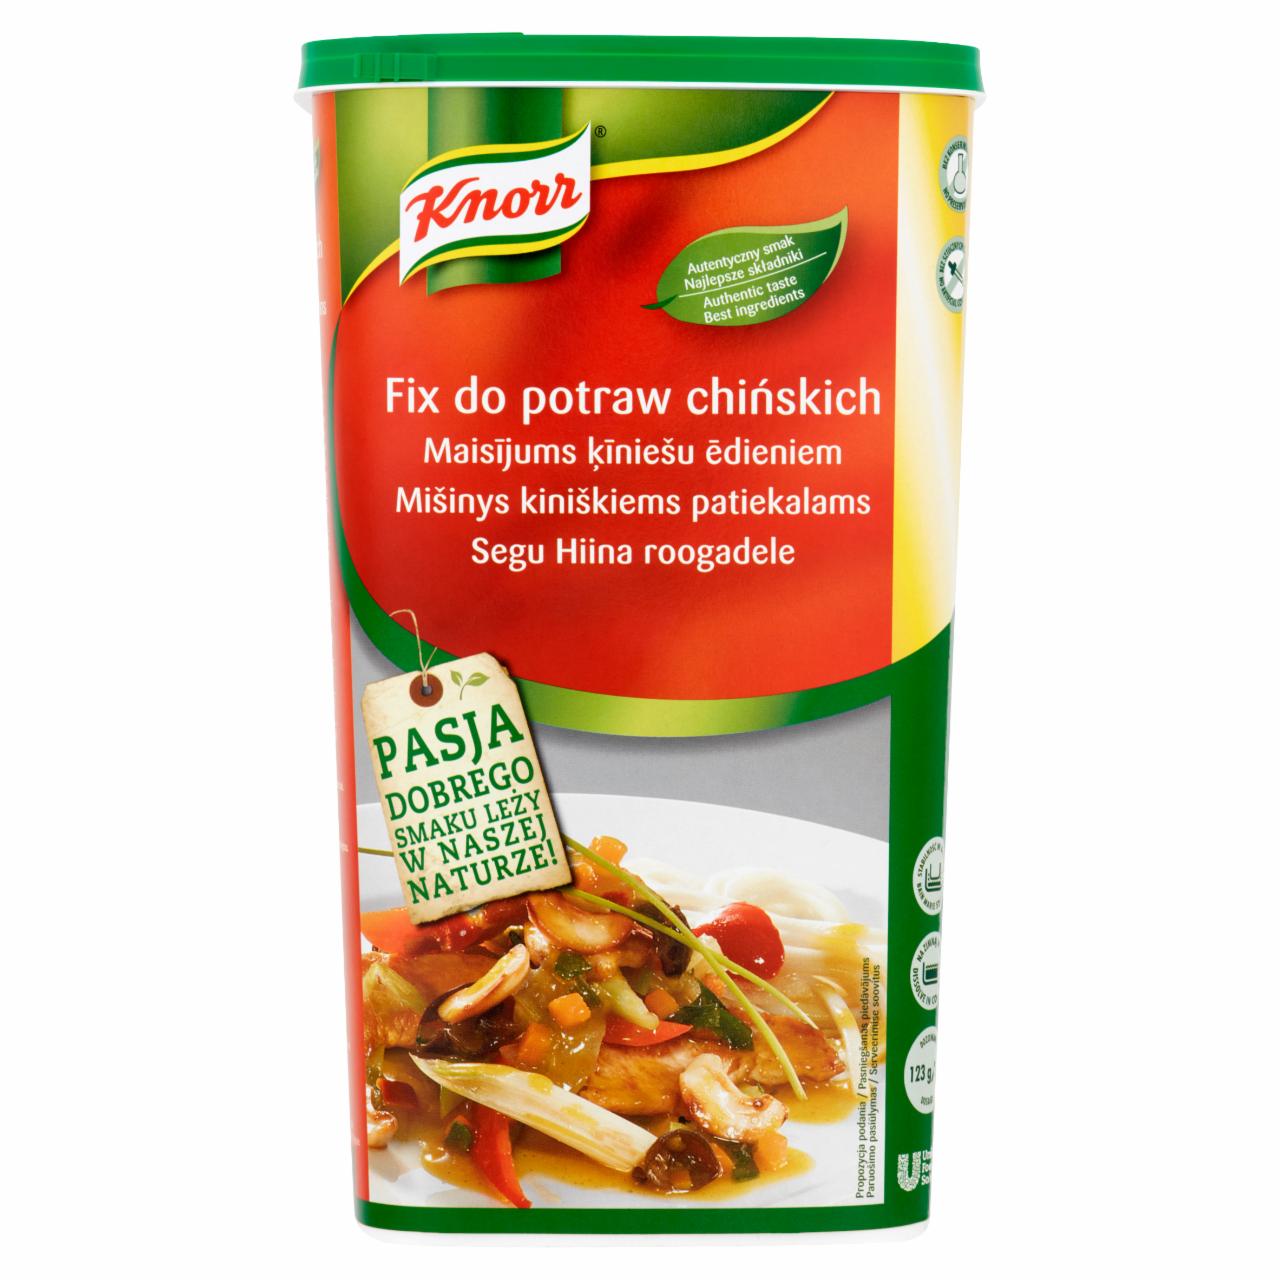 Zdjęcia - Knorr Fix do potraw chińskich 1 kg